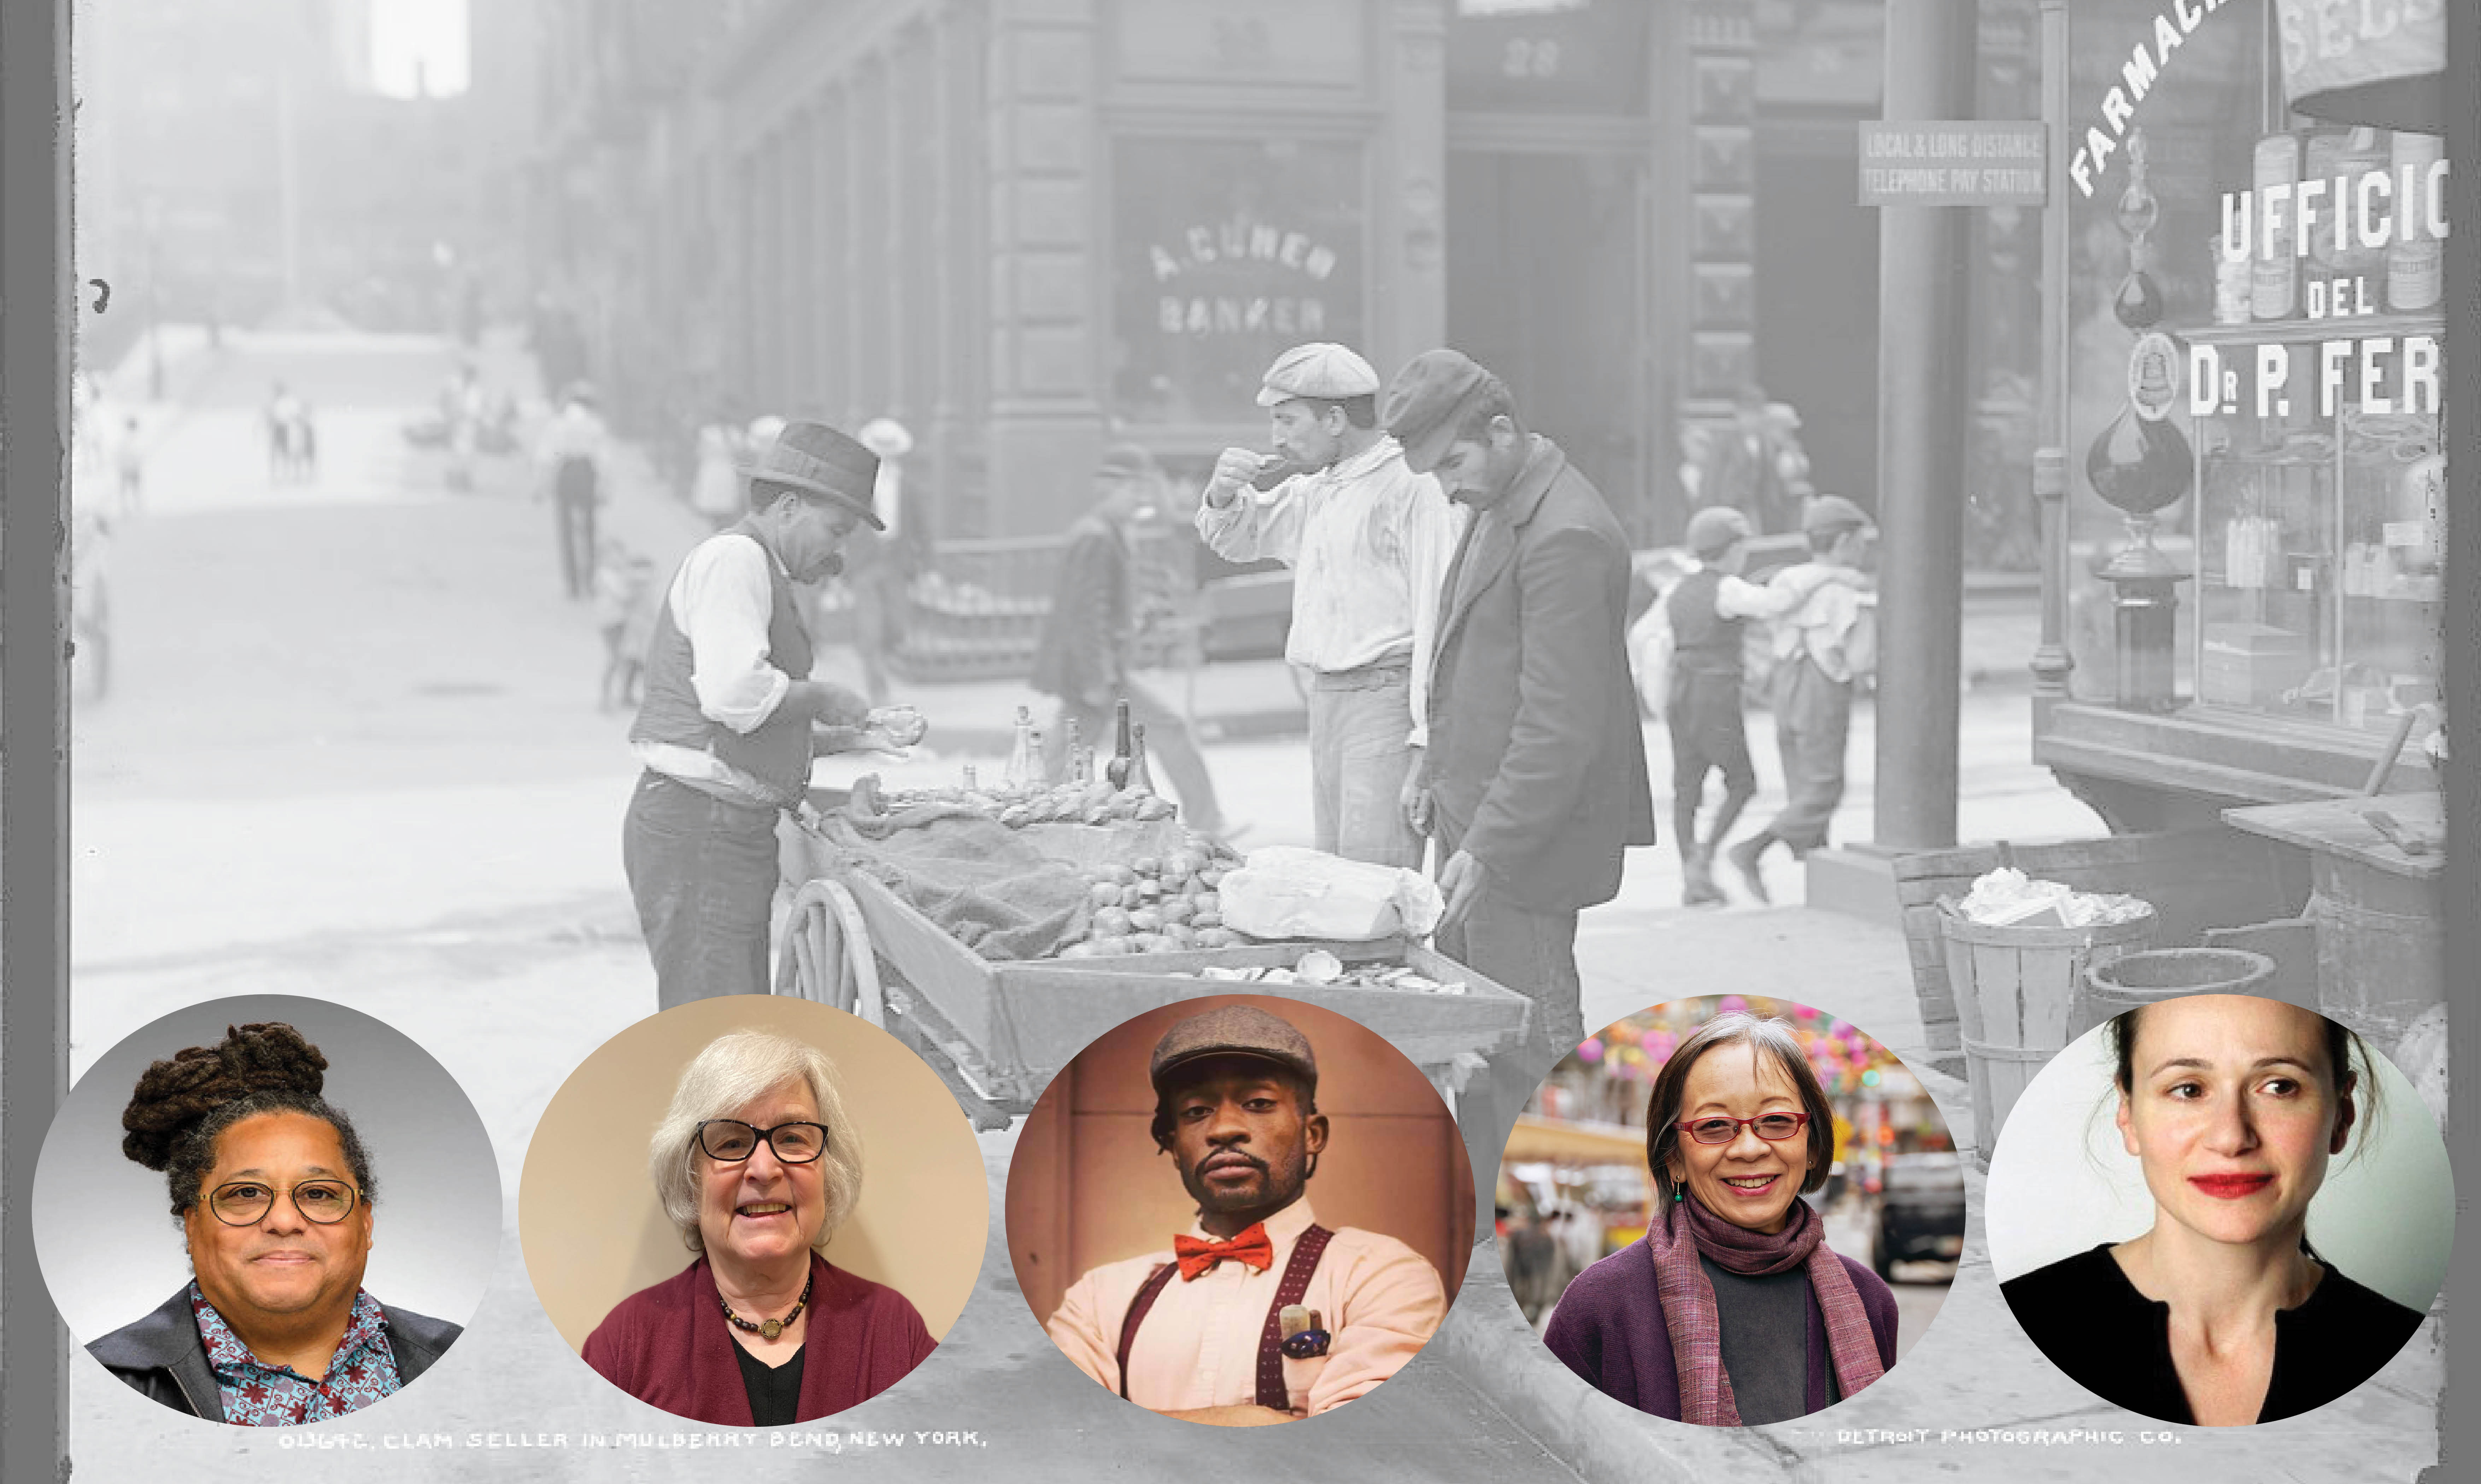 배경에는 1900년 뉴욕 Mulberry Bend의 조개 장수 사진이 있습니다. 거리의 조개 수레 주위에 네 명의 남자가 서 있습니다. 사진 하단에는 5개의 헤드샷이 있습니다. 왼쪽에서 오른쪽으로: Scott Barton, Hasia Diner, Ben Harney, Grace Young, Julia Moskin.